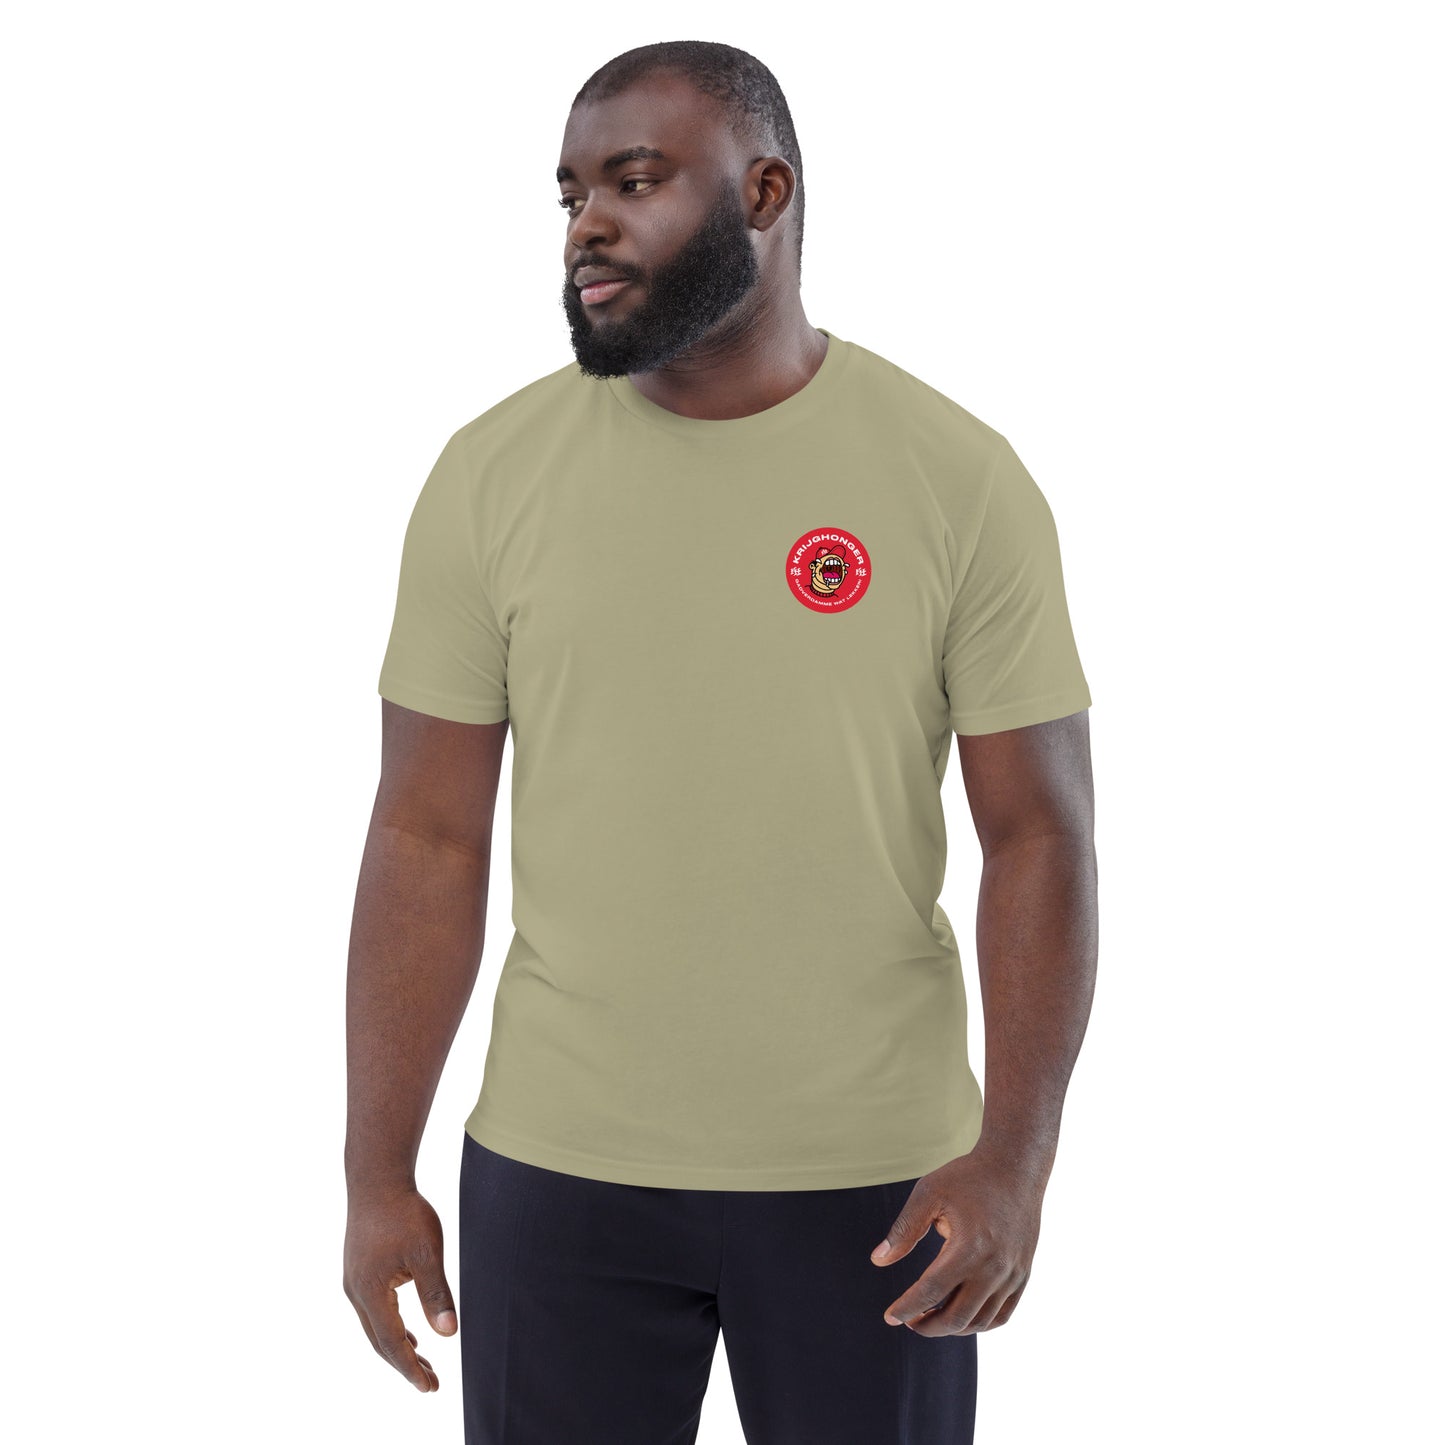 KrijgHonger Uniseks T-shirt van biologisch katoen